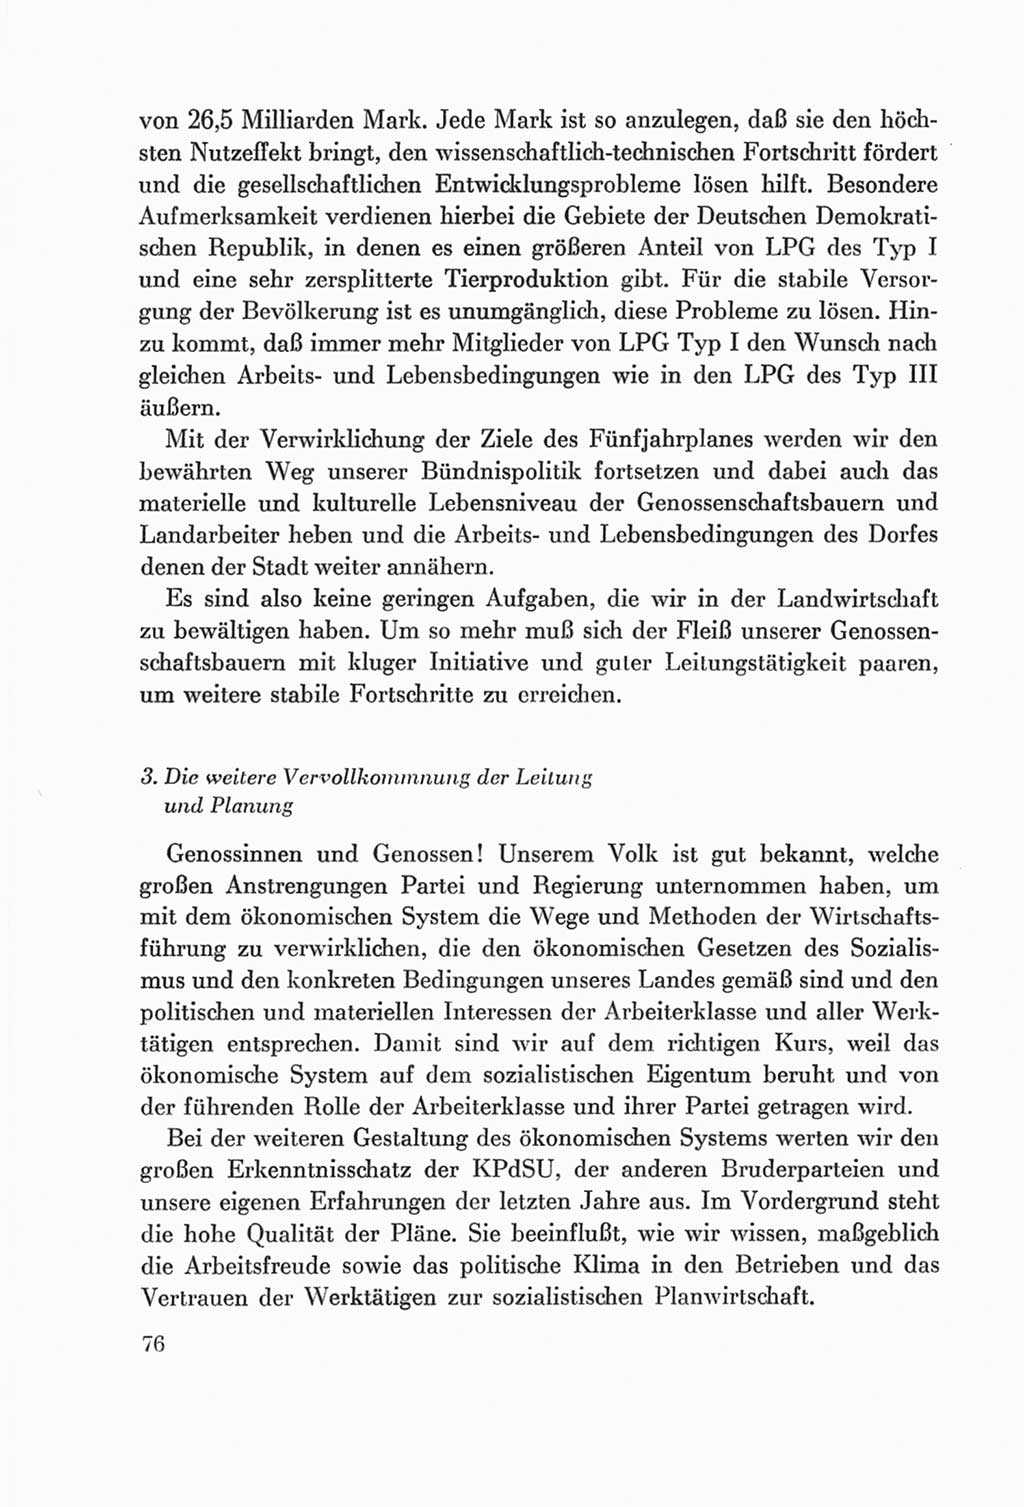 Protokoll der Verhandlungen des Ⅷ. Parteitages der Sozialistischen Einheitspartei Deutschlands (SED) [Deutsche Demokratische Republik (DDR)] 1971, Band 1, Seite 76 (Prot. Verh. Ⅷ. PT SED DDR 1971, Bd. 1, S. 76)